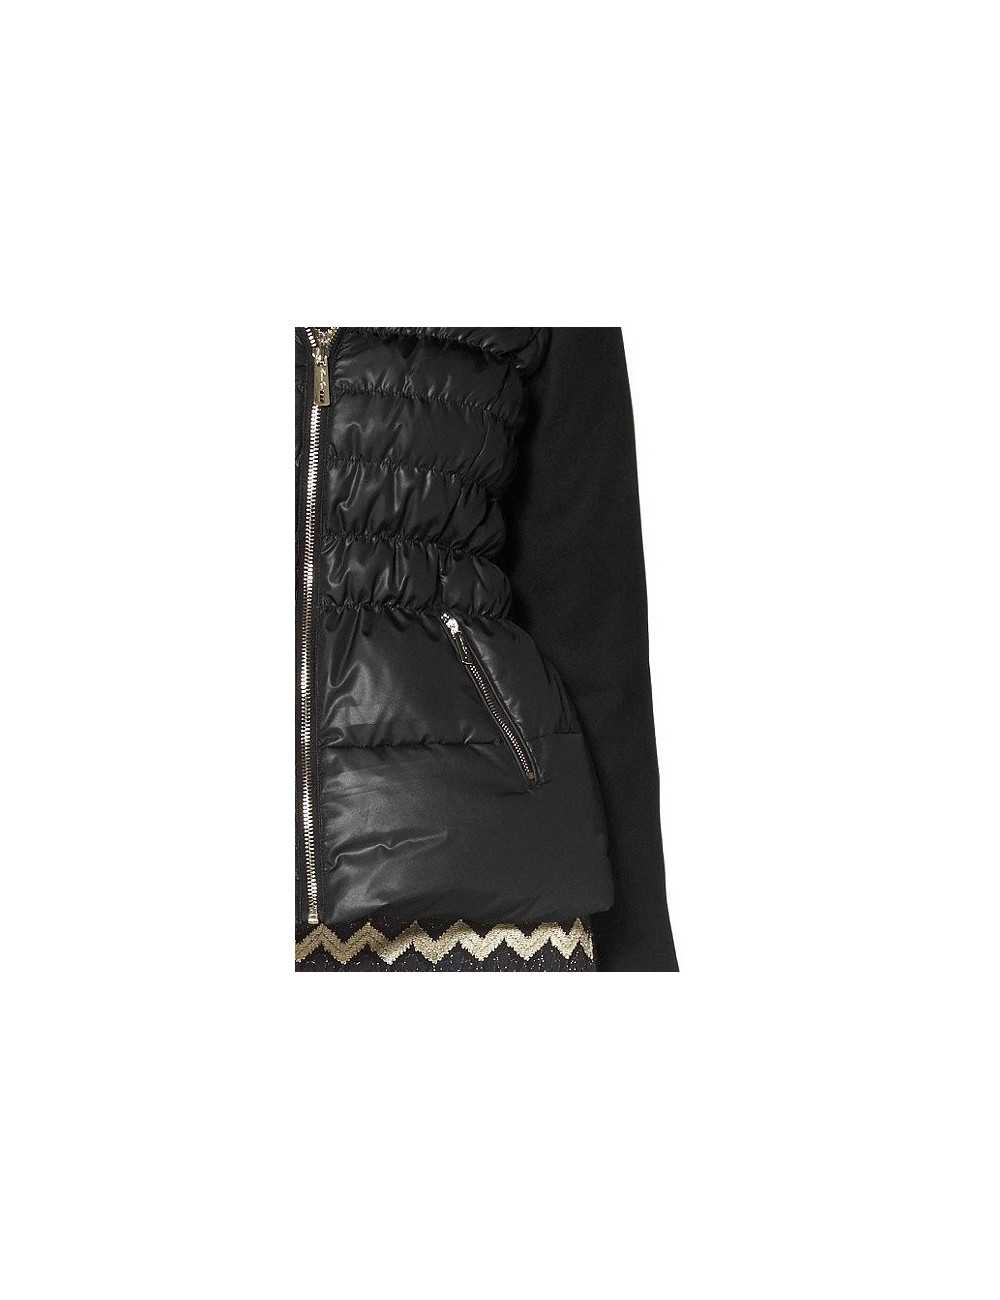 Piumino donna Amanda Ryan nero con manica in tessuto lana - Giacche & Cappotti Donna